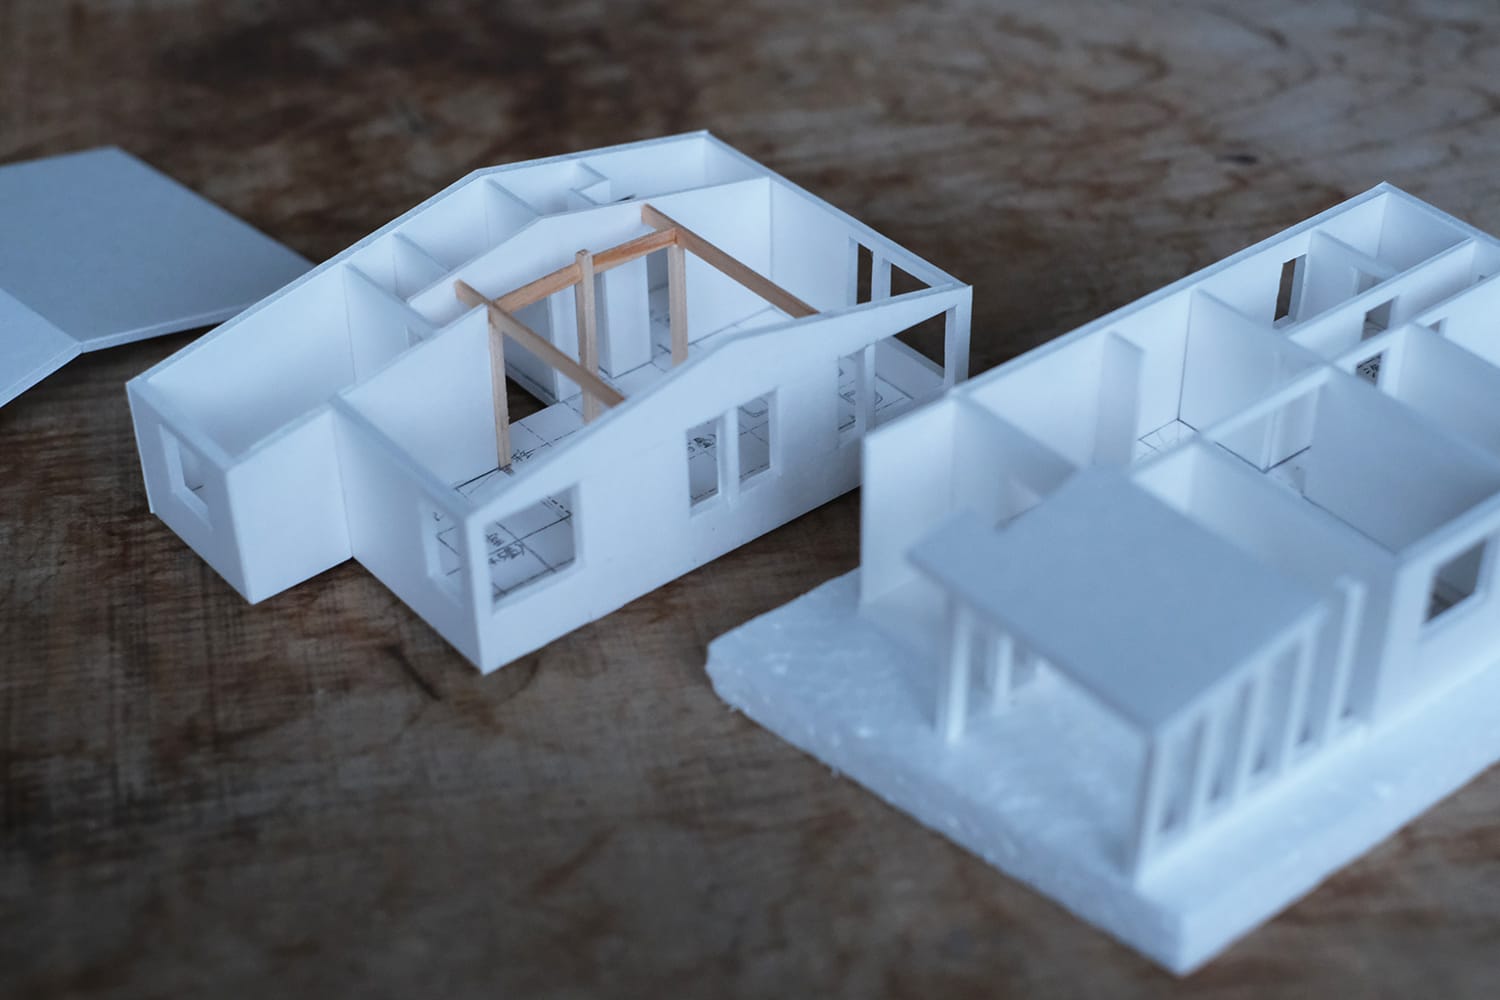 スチレンボードで作った縮尺1/100の住宅模型の2階屋根と2階部分と1階部分を分解して見る